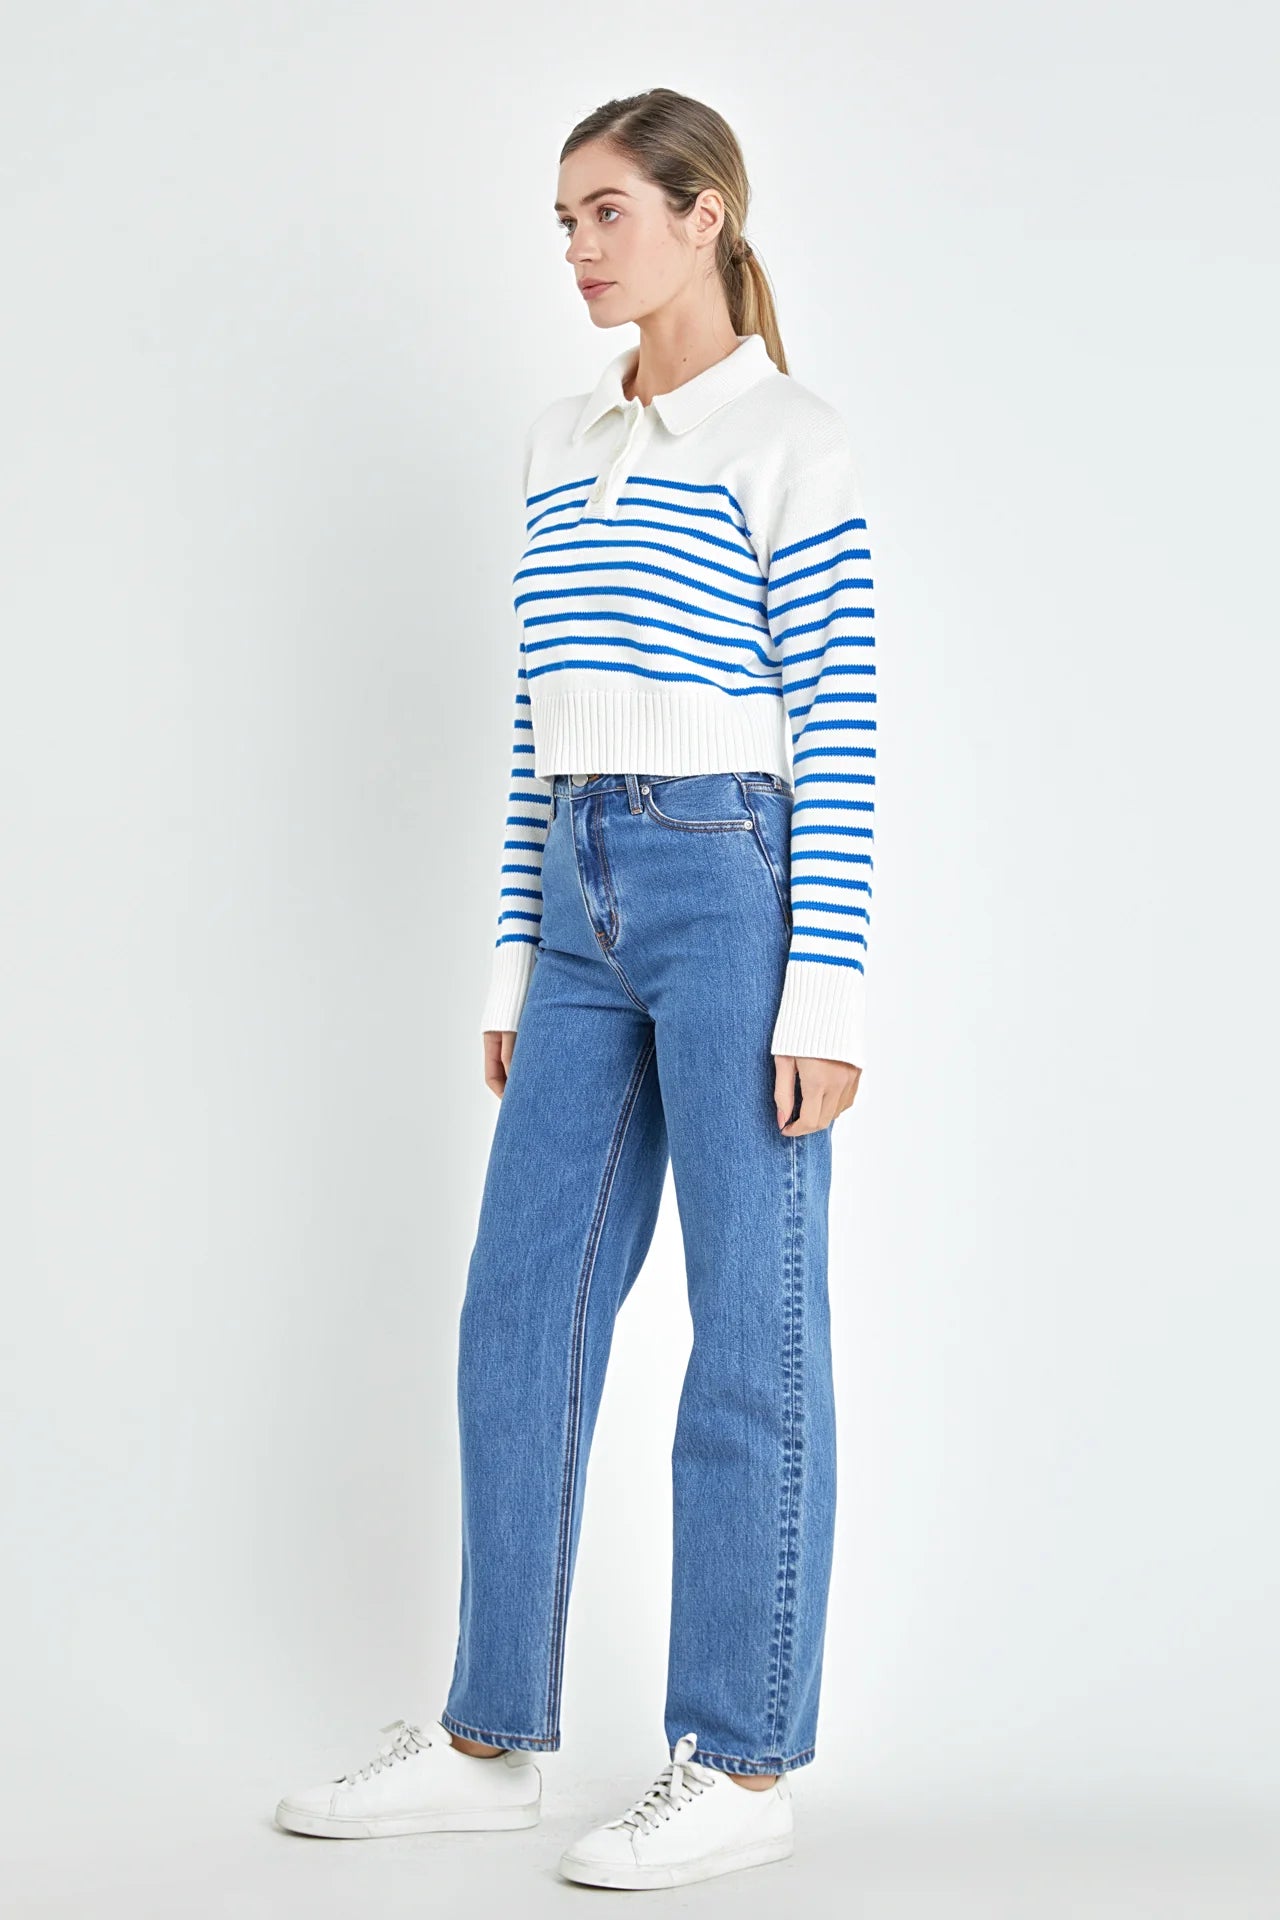 Stripe Knit Top | White/Blue